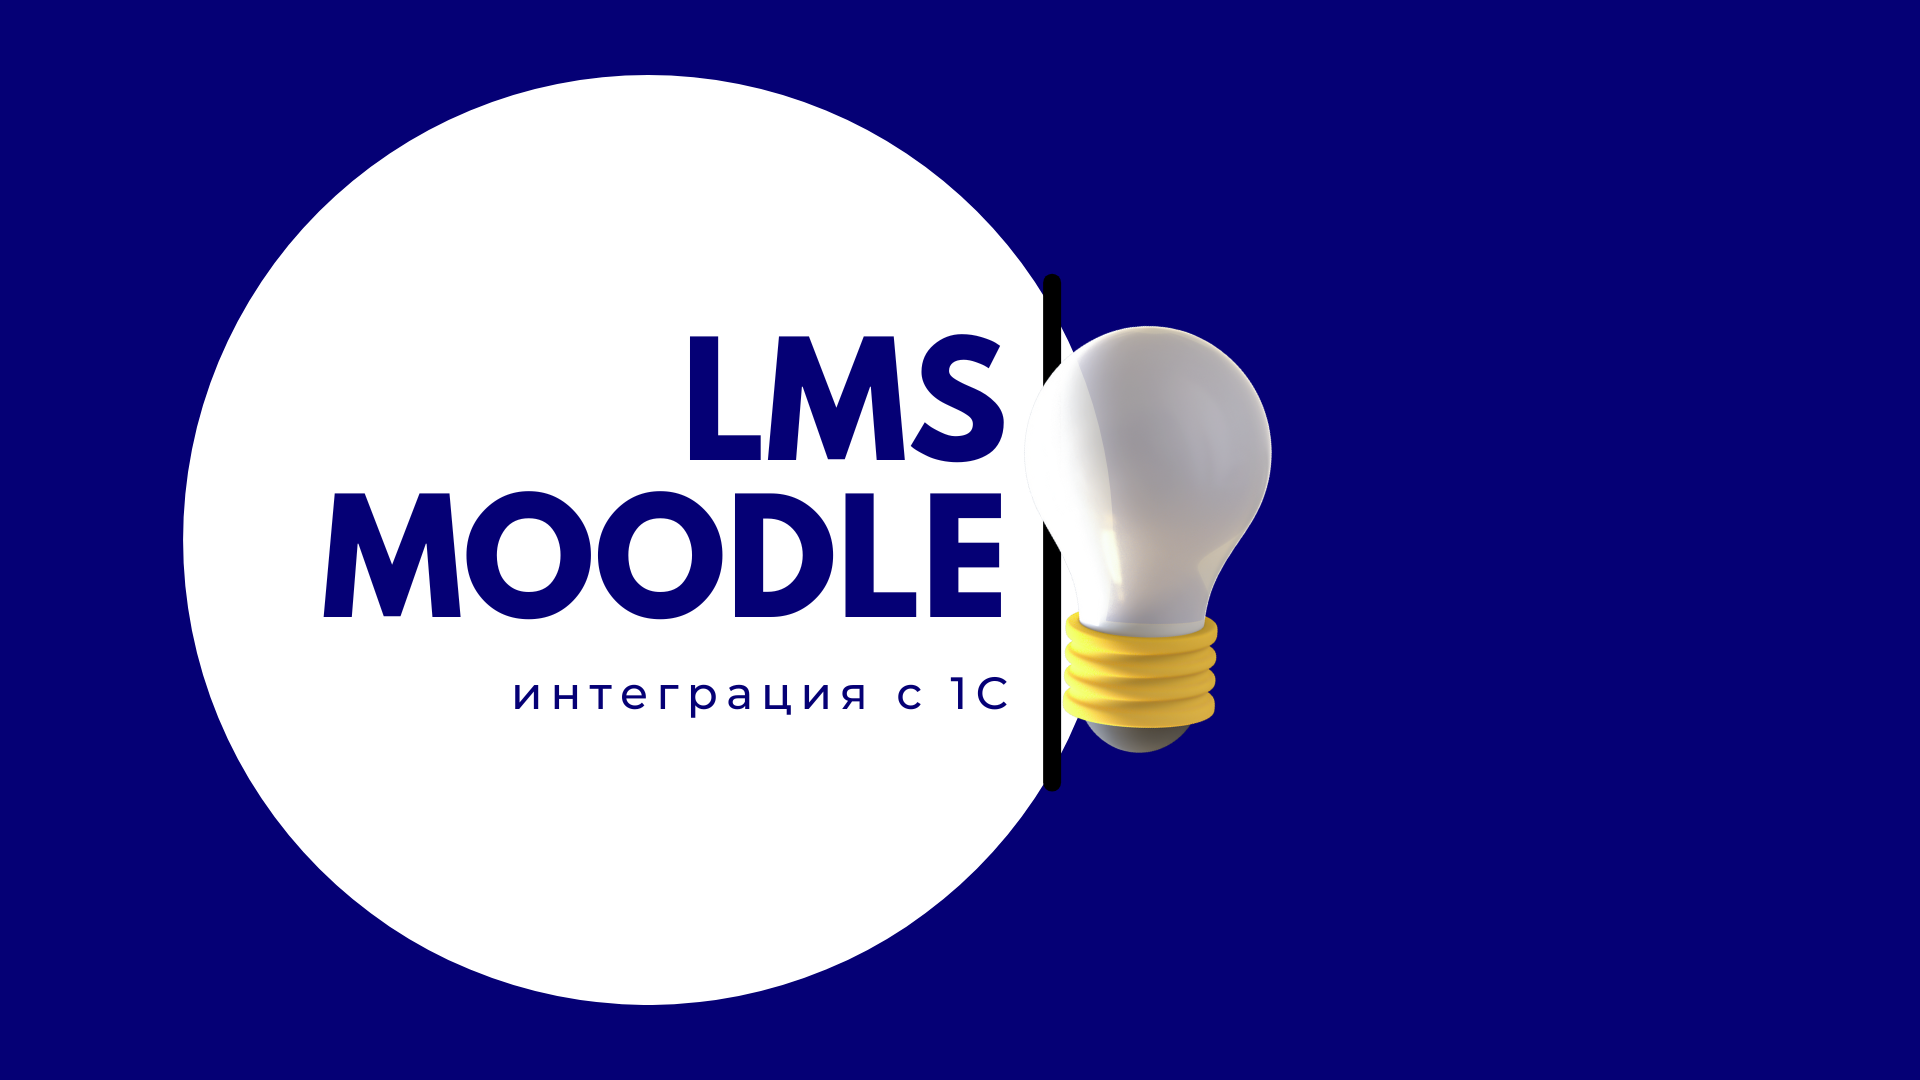 LMS Moodle: интеграция с 1С